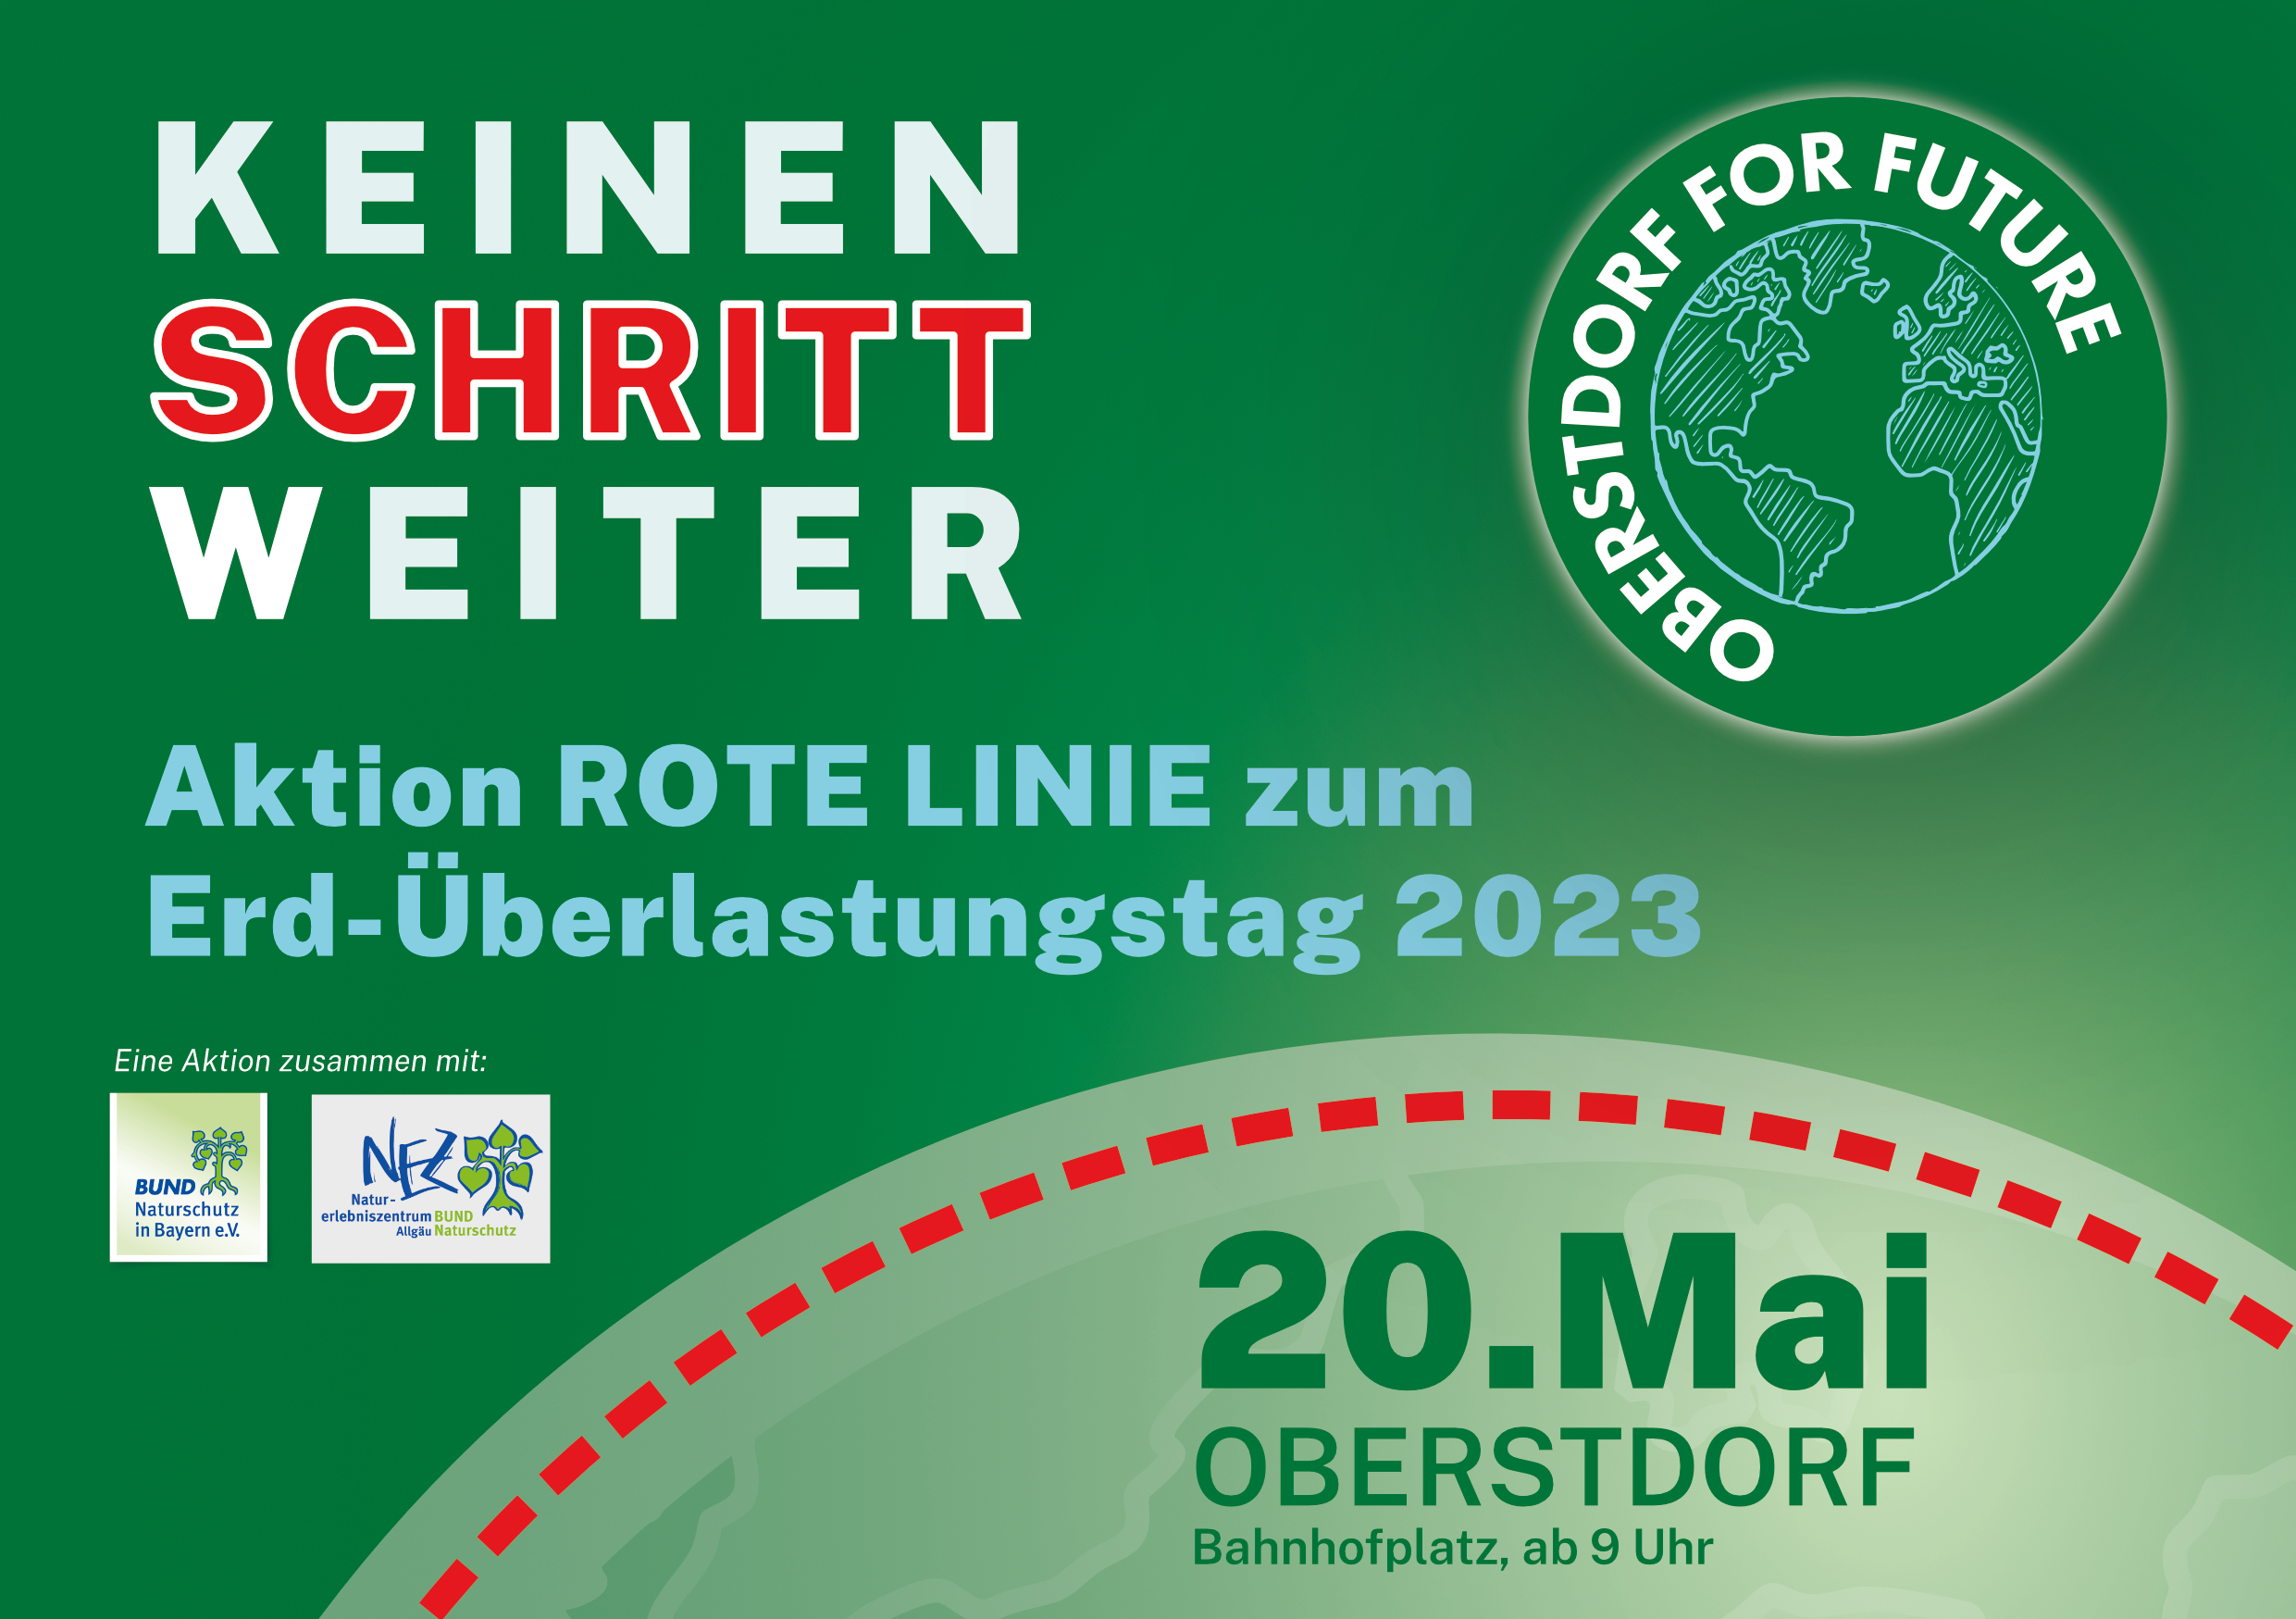 Oberstdorf for Future - Aktion Rote Linie zum Erdüberlastungstag 2023